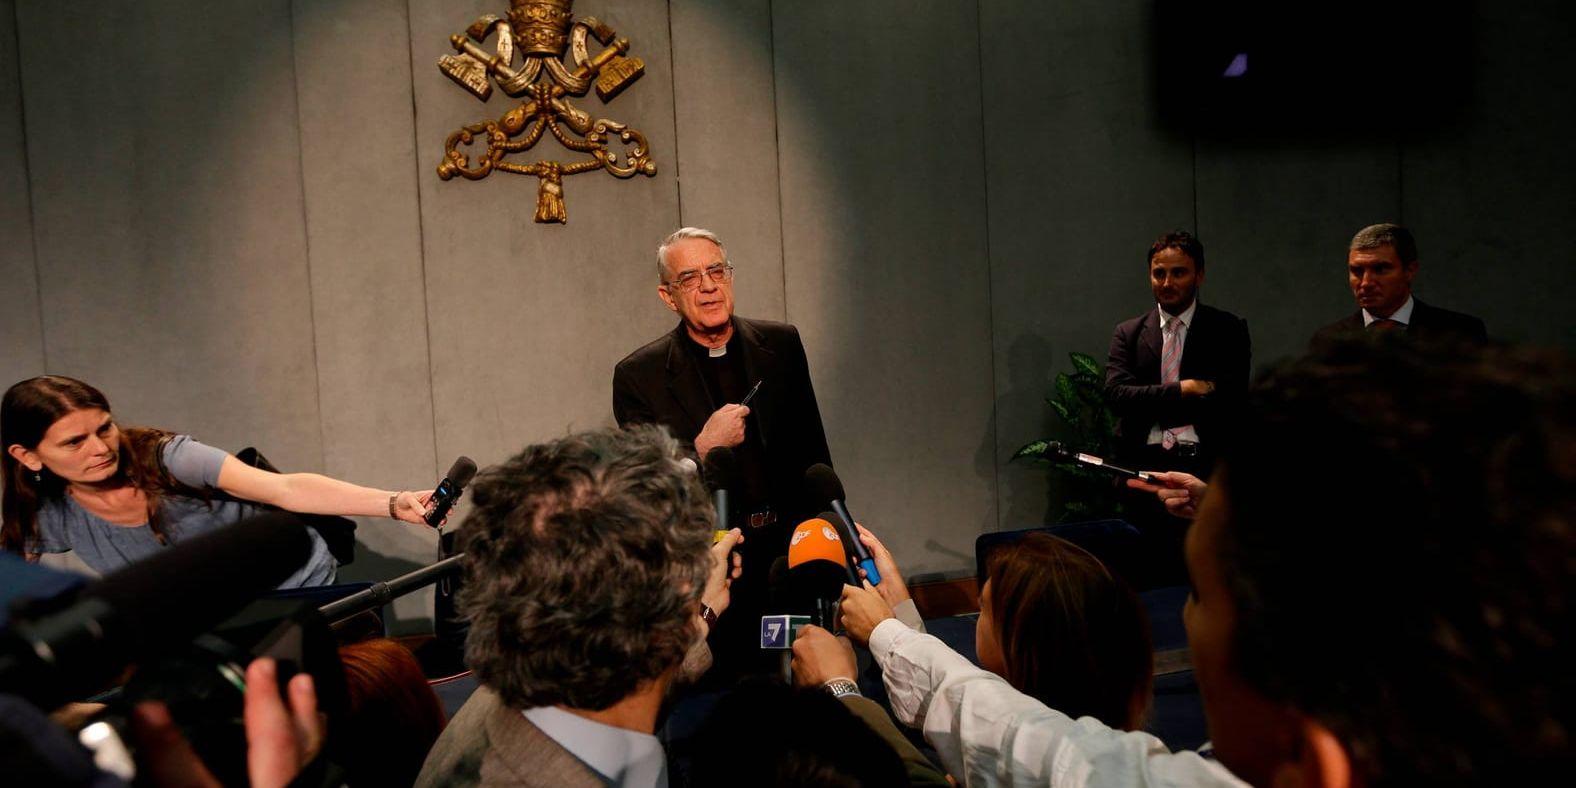 Vatikanens talesperson Federico Lombardi pratar med journalister efter att påvens butler läckt dokument 2012. Arkivbild.